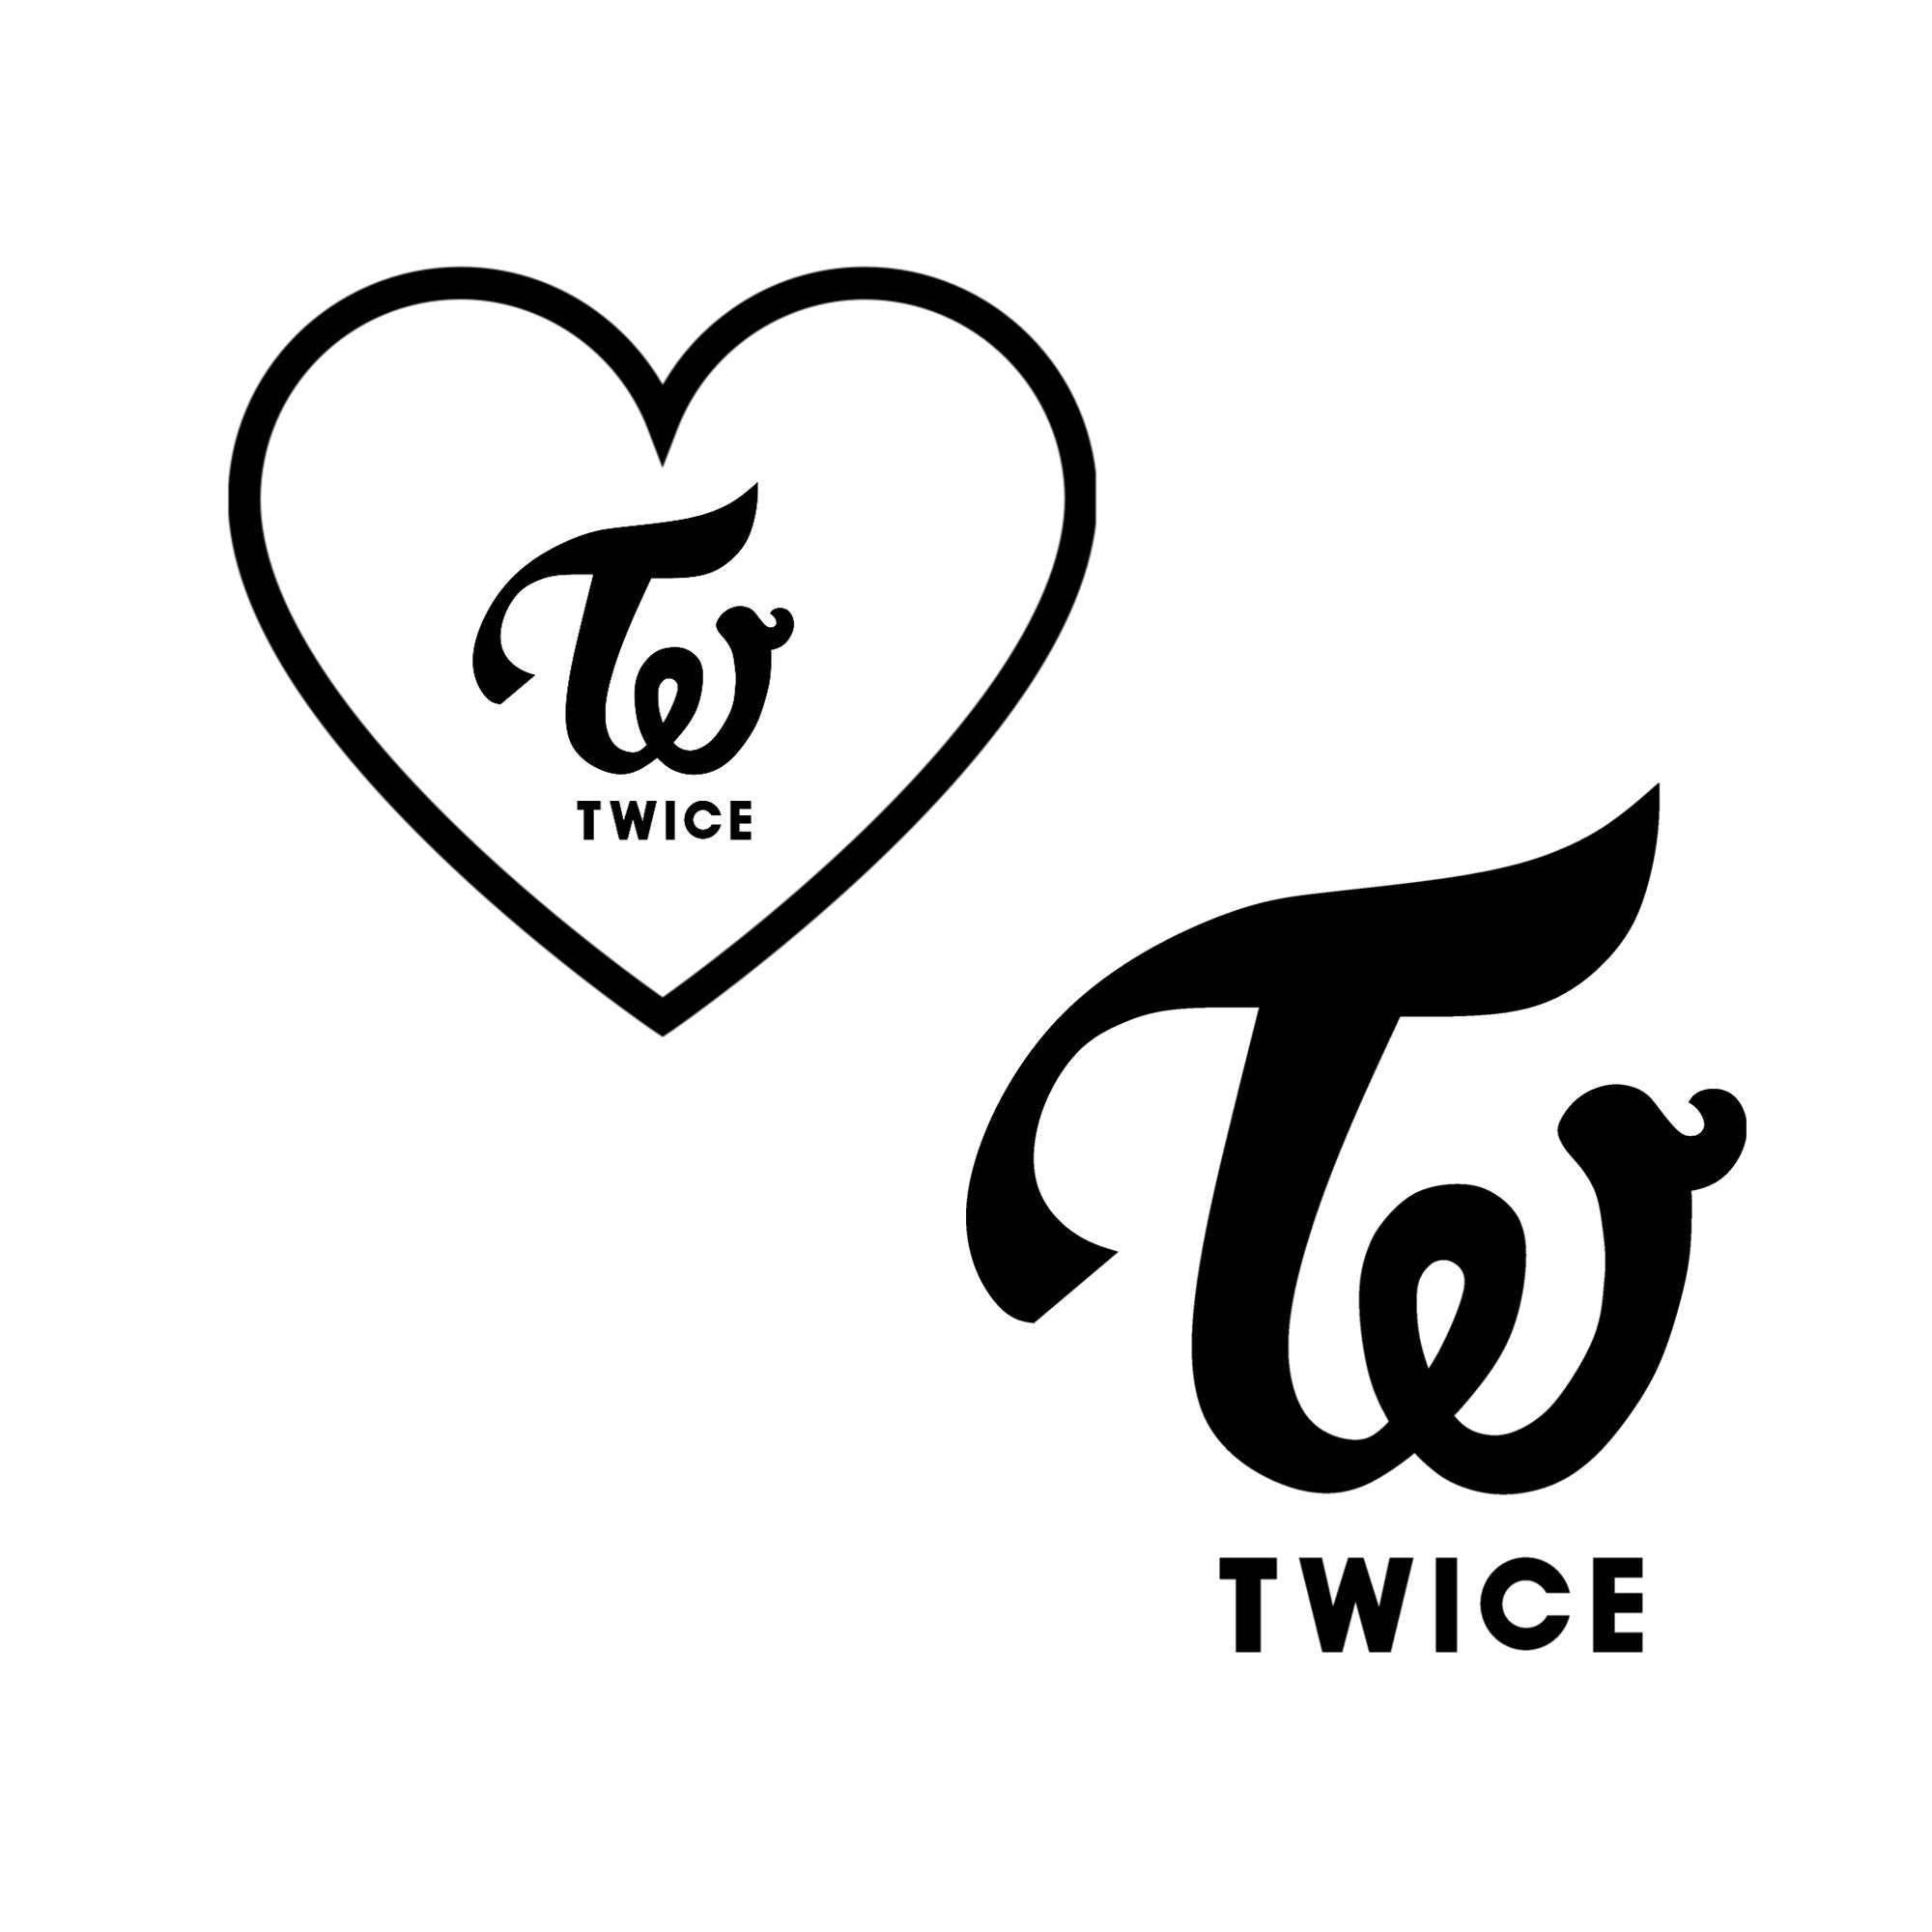 Twice Logo in Chrome by Kaeg on DeviantArt